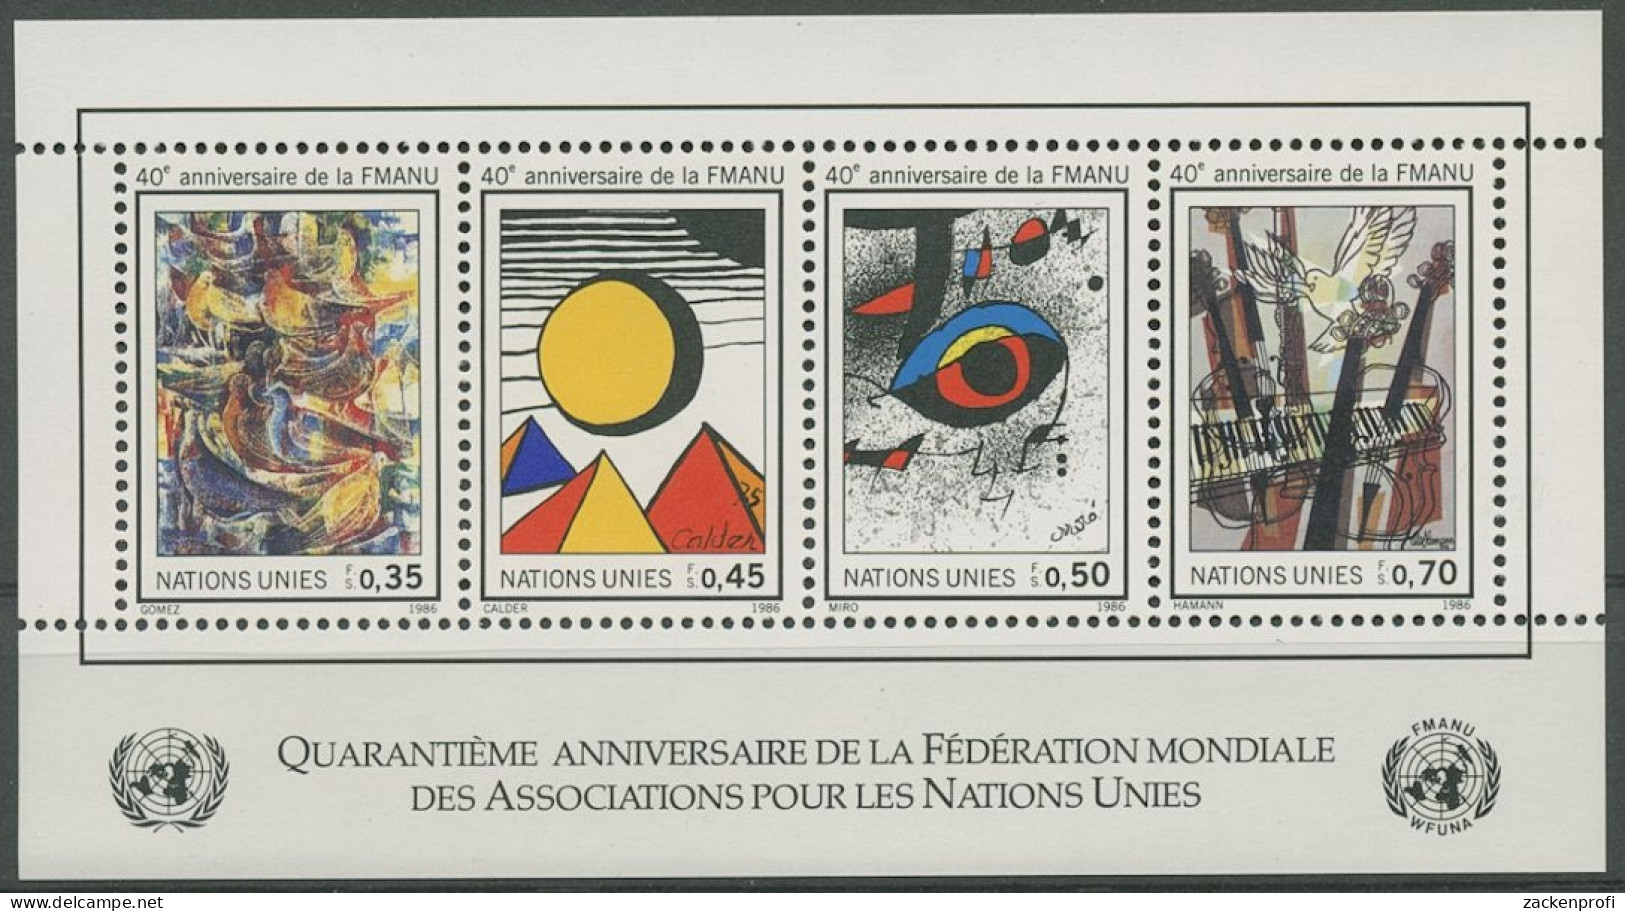 UNO Genf 1986 40 Jahre WFUNA Block 4 Postfrisch (C14011) - Blocks & Sheetlets